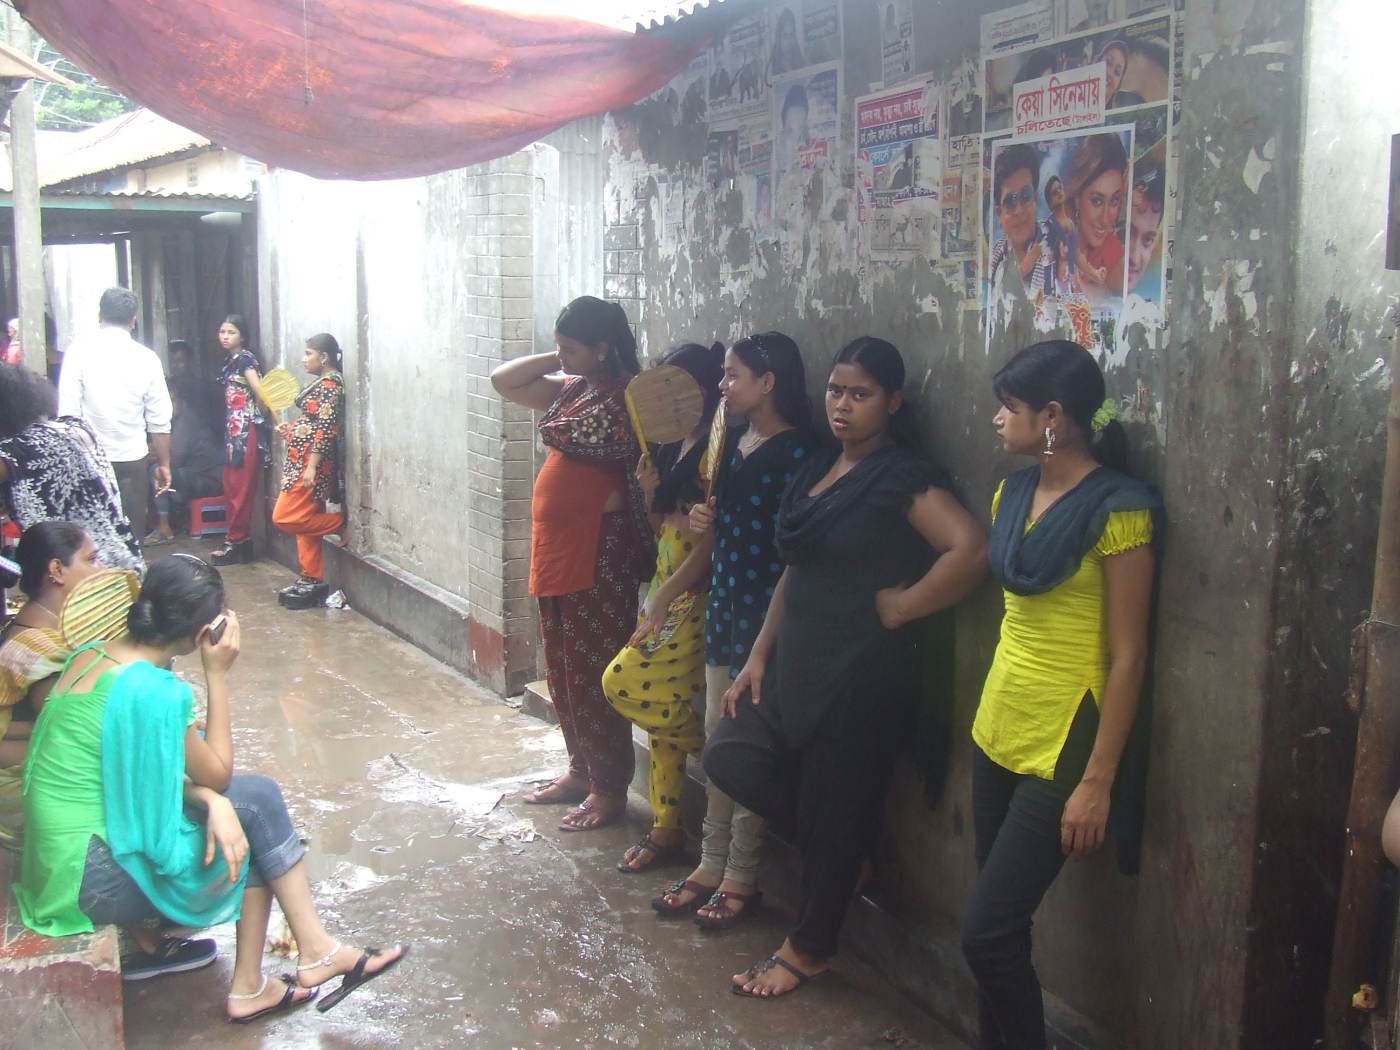  Whores in Khulna, Bangladesh